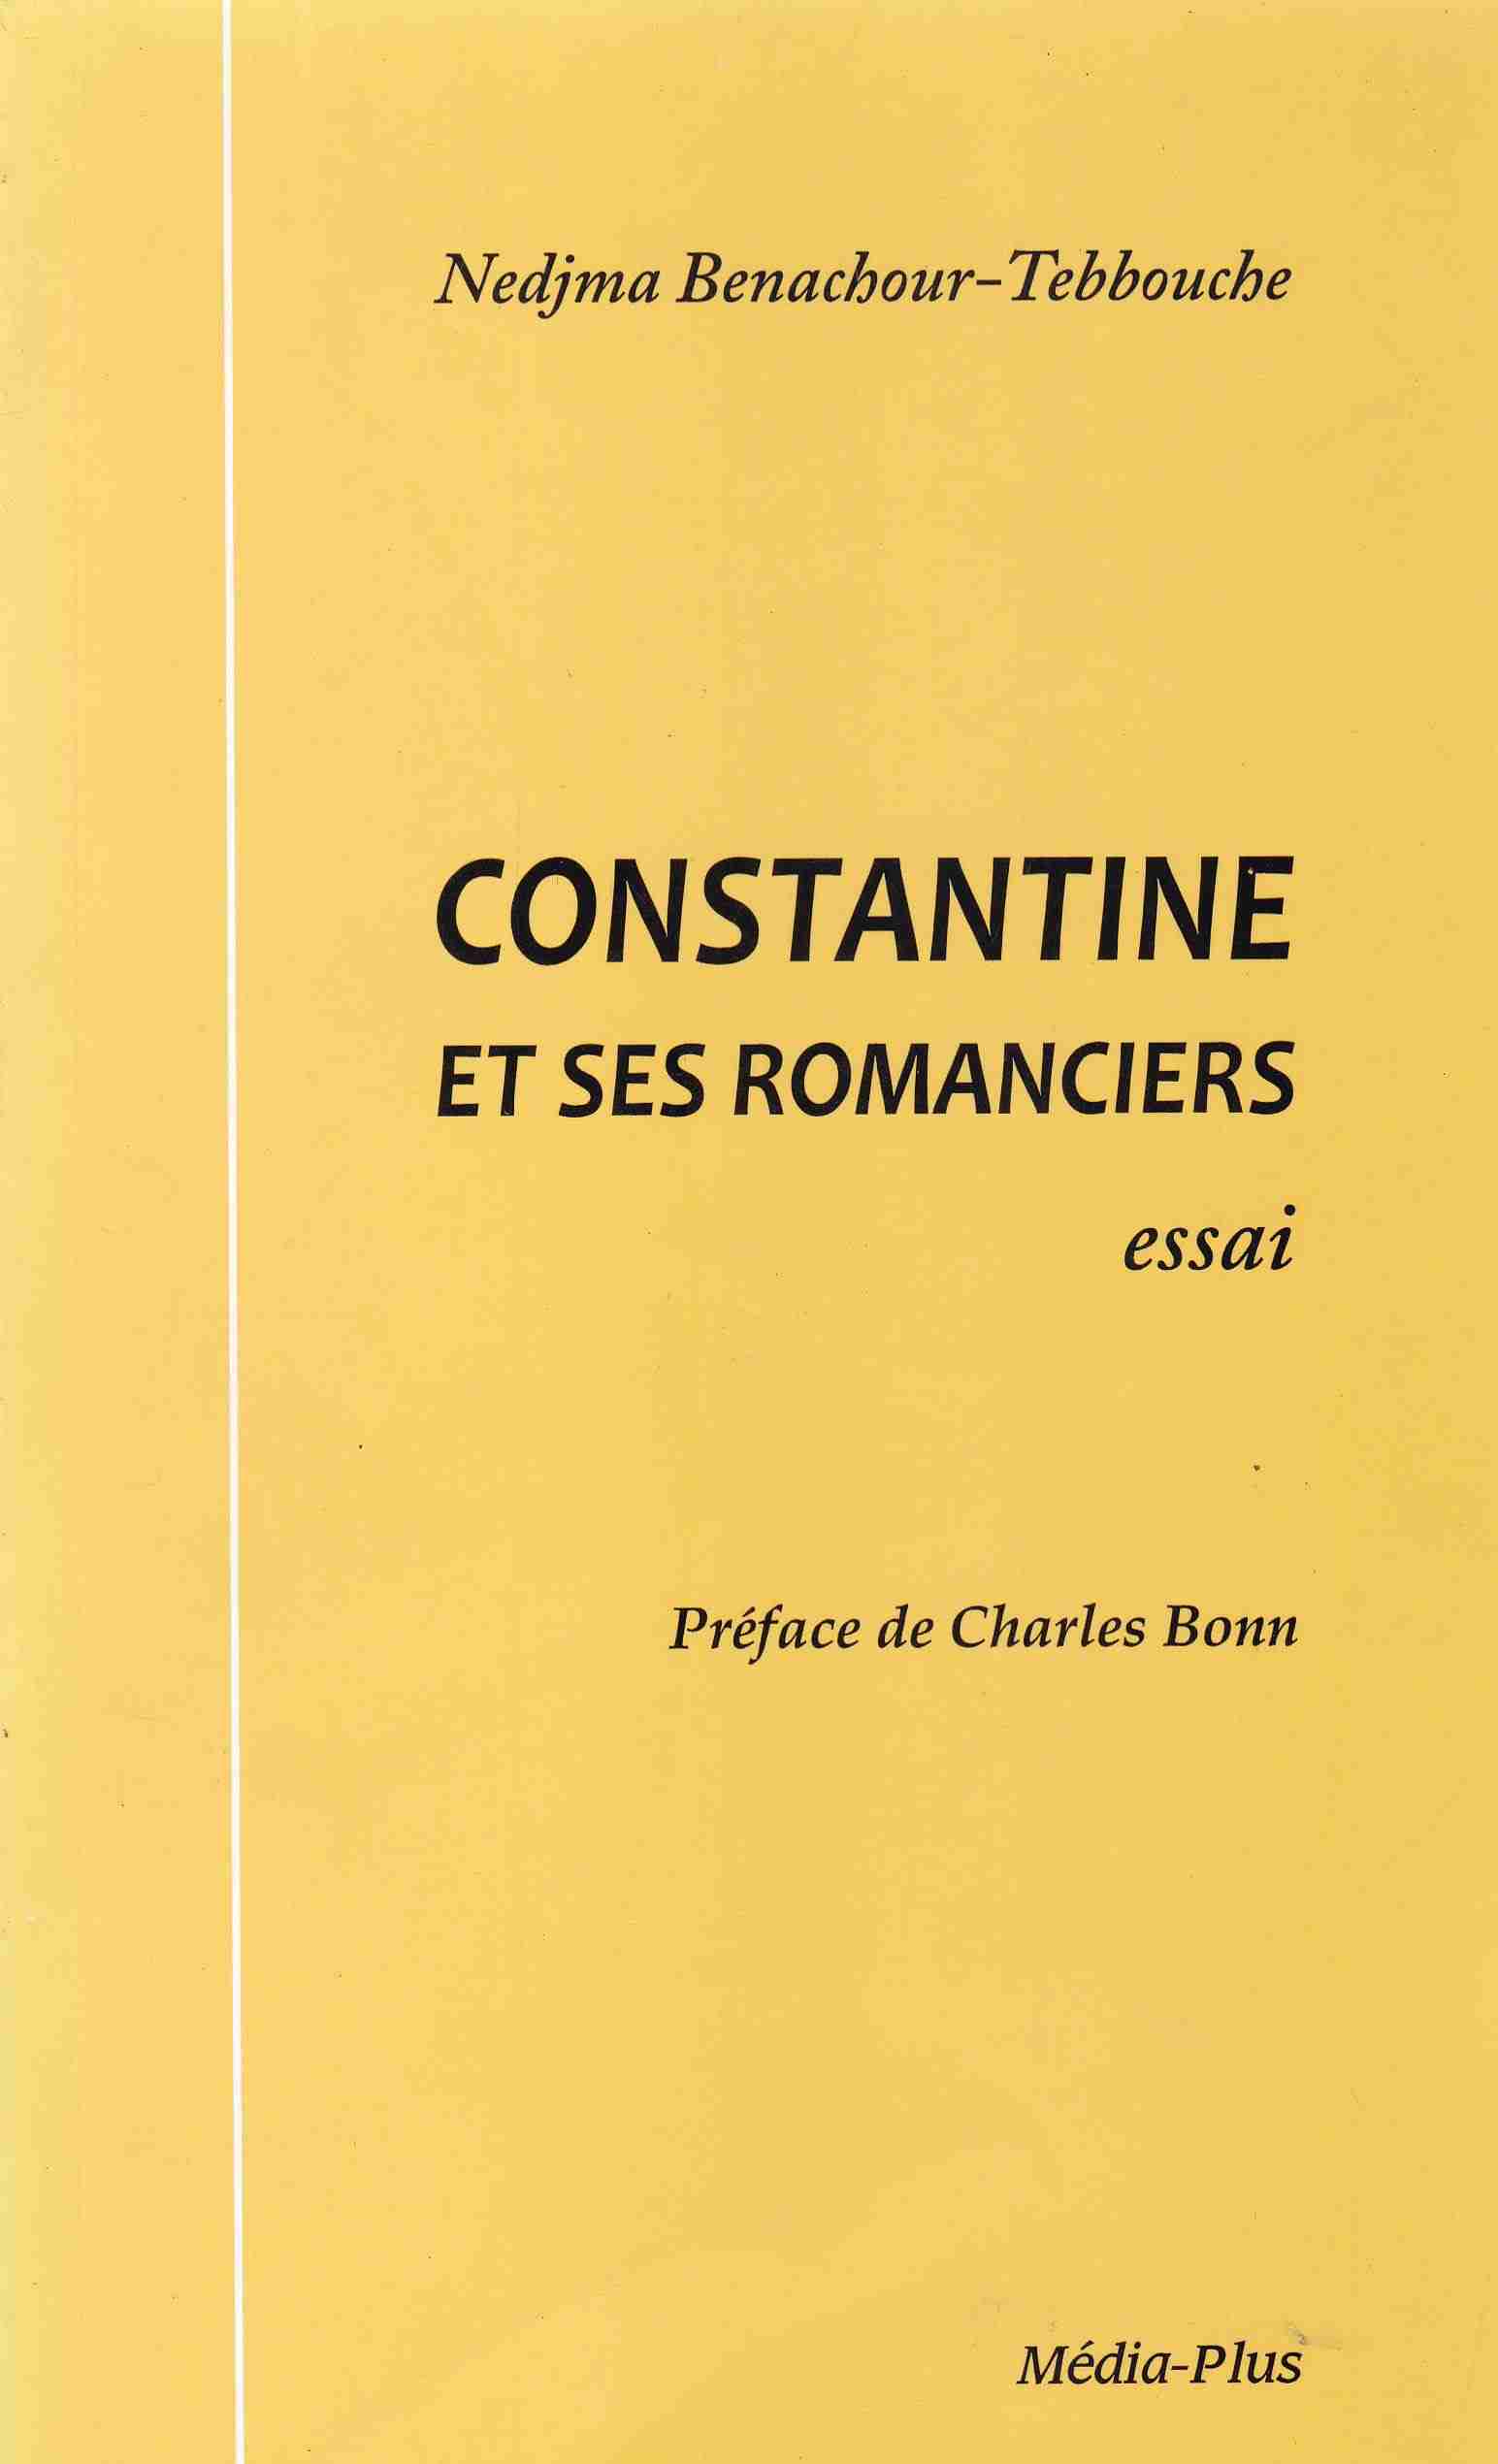 constantine et ses romanciers